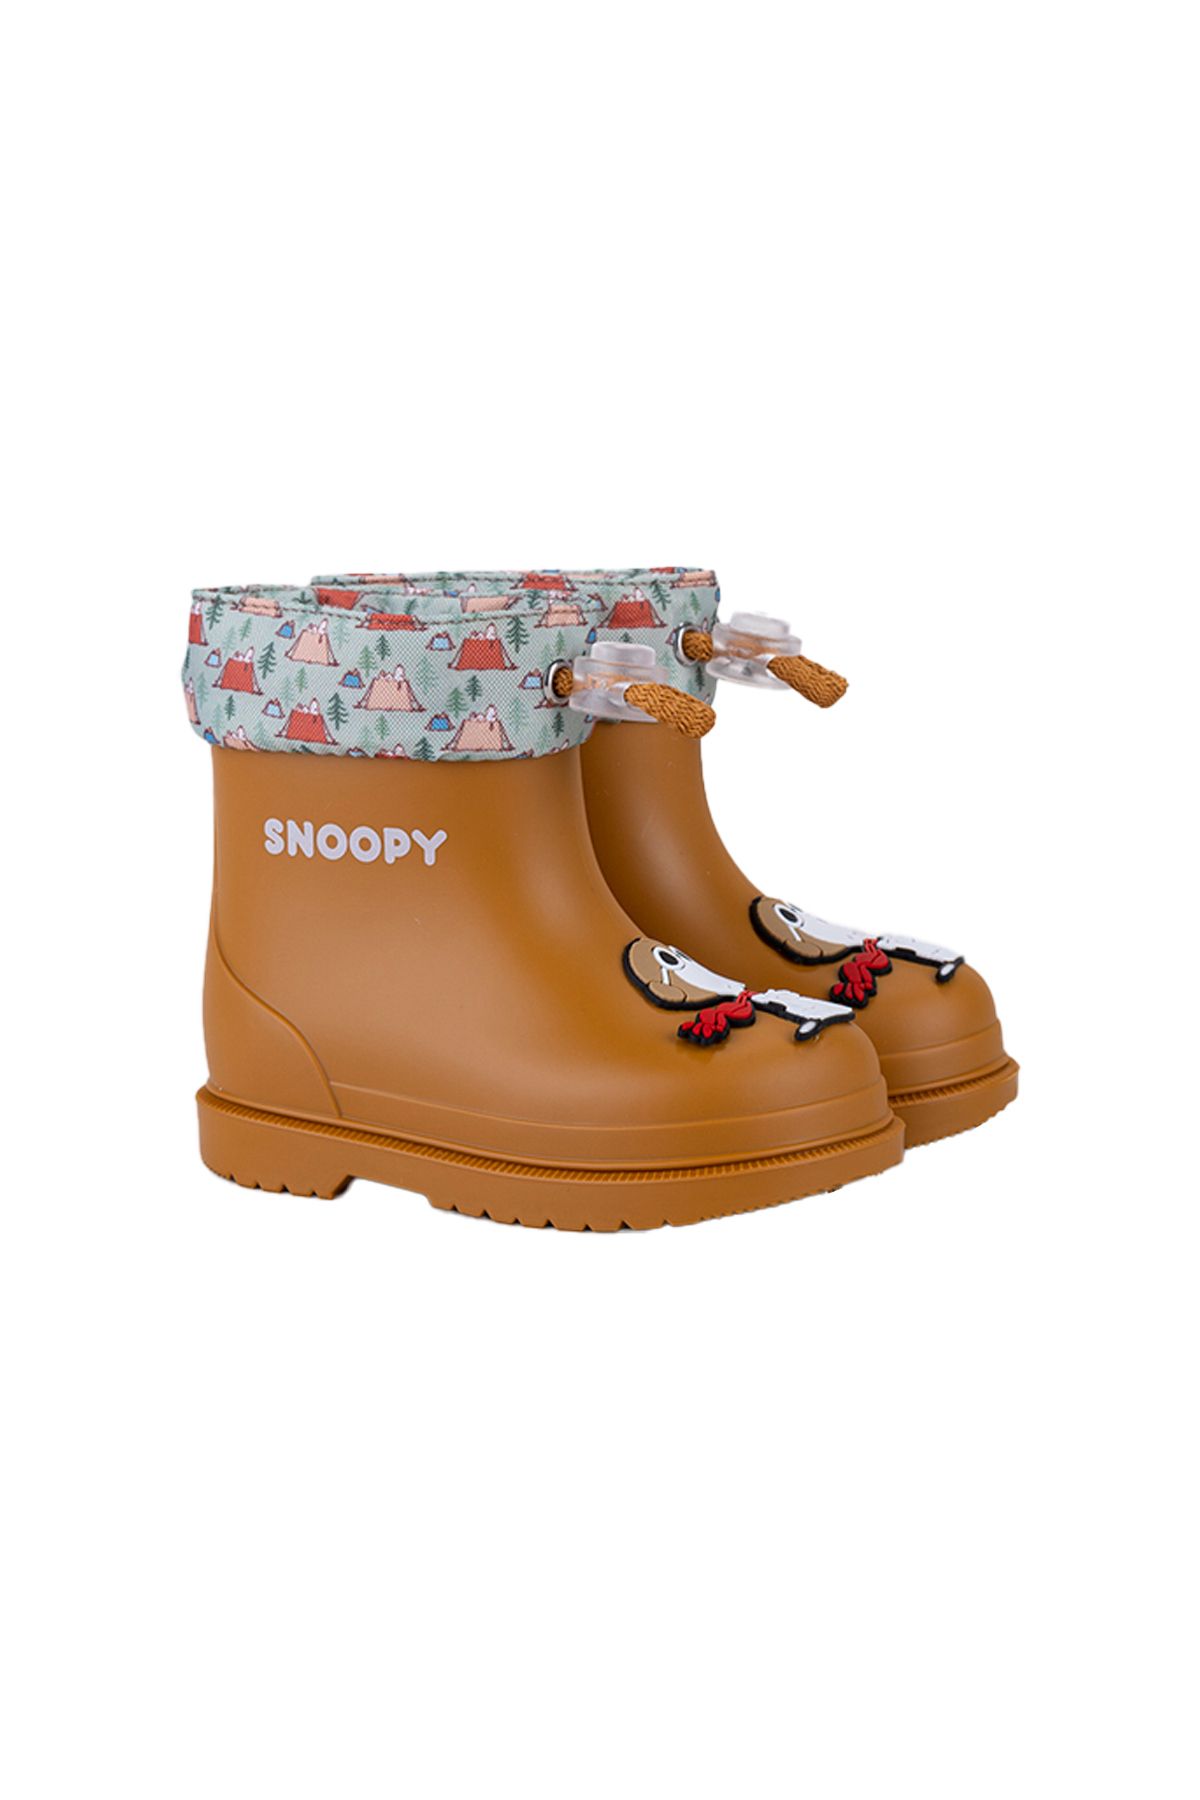 IGOR Bımbı Snoopy Karamel Unısex Yağmur Çizmesi